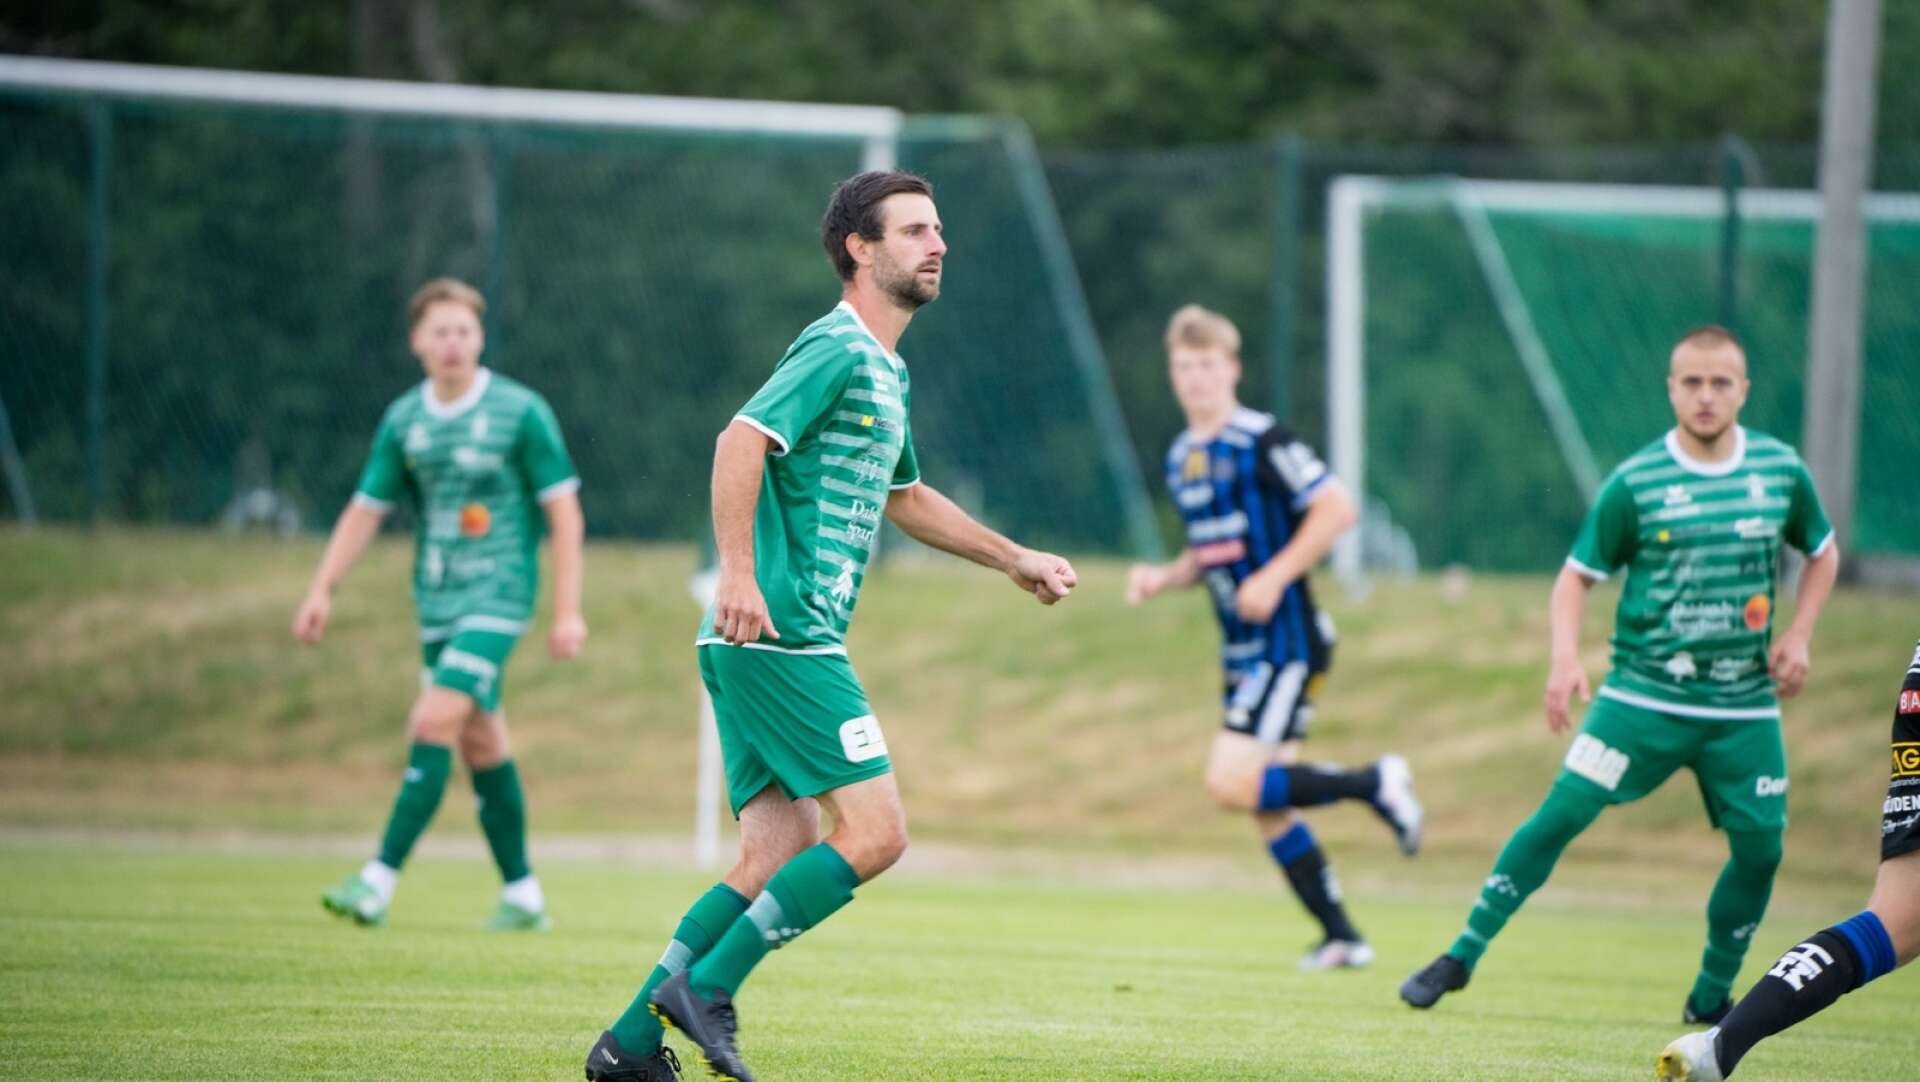 2022 vann Högsäters GF DM och fick spela Svenska cupen mot IF Karlstad Fotboll. I år blev det förlust i första matchen, vilket var frusterande menar Jonas Lindwall Hedlund.